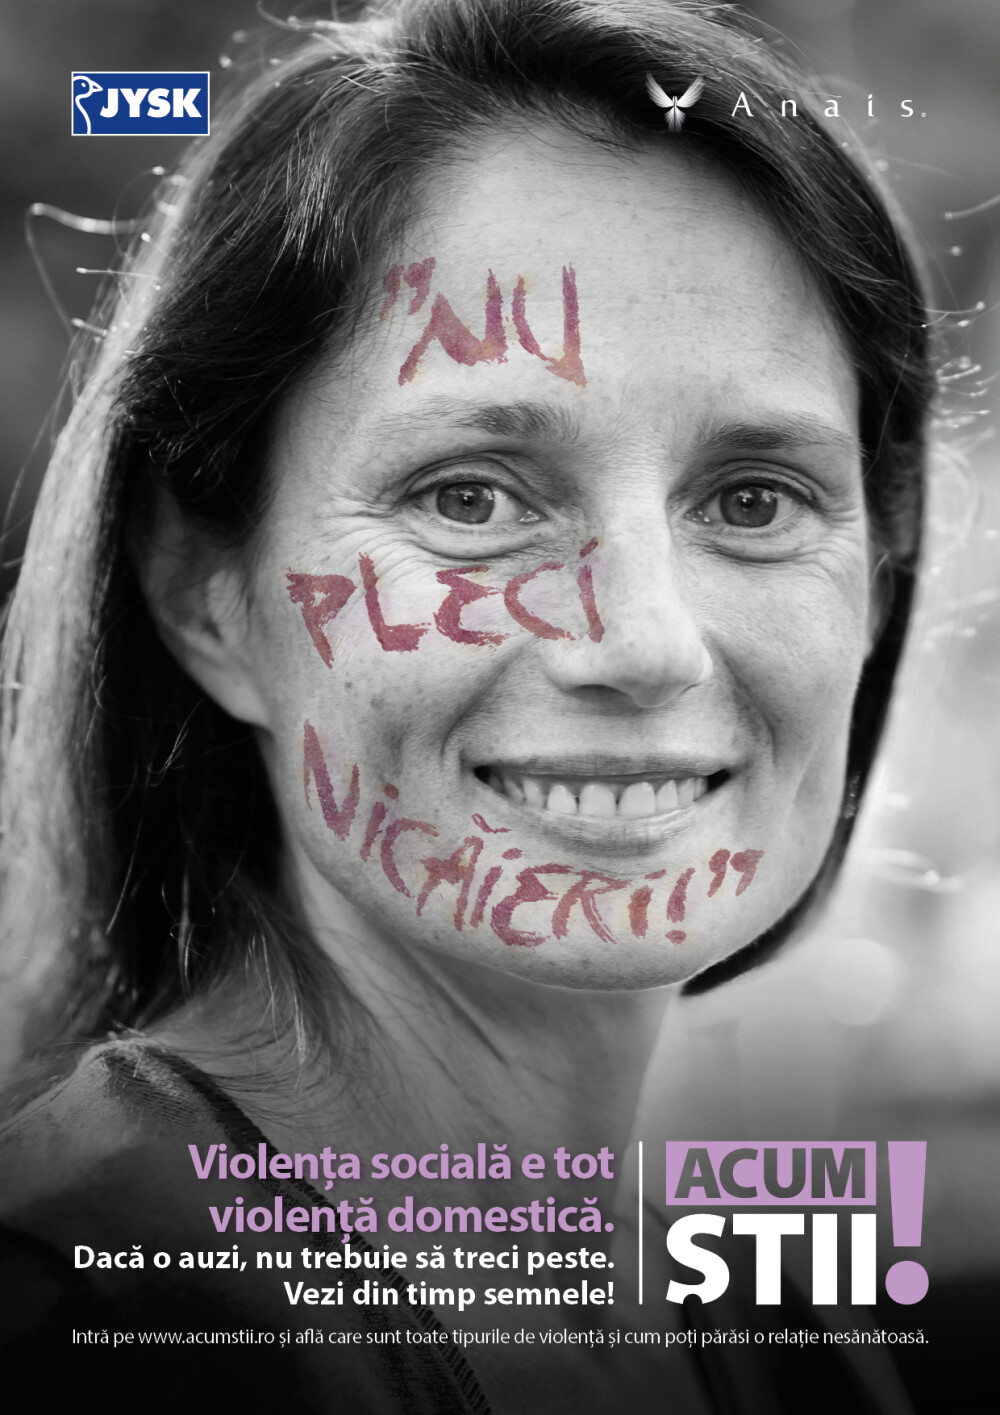 (P) Asociatia Anais si JYSK lanseaza campania de informare cu privire la violența domestică „Acum știi” - Imaginea 2